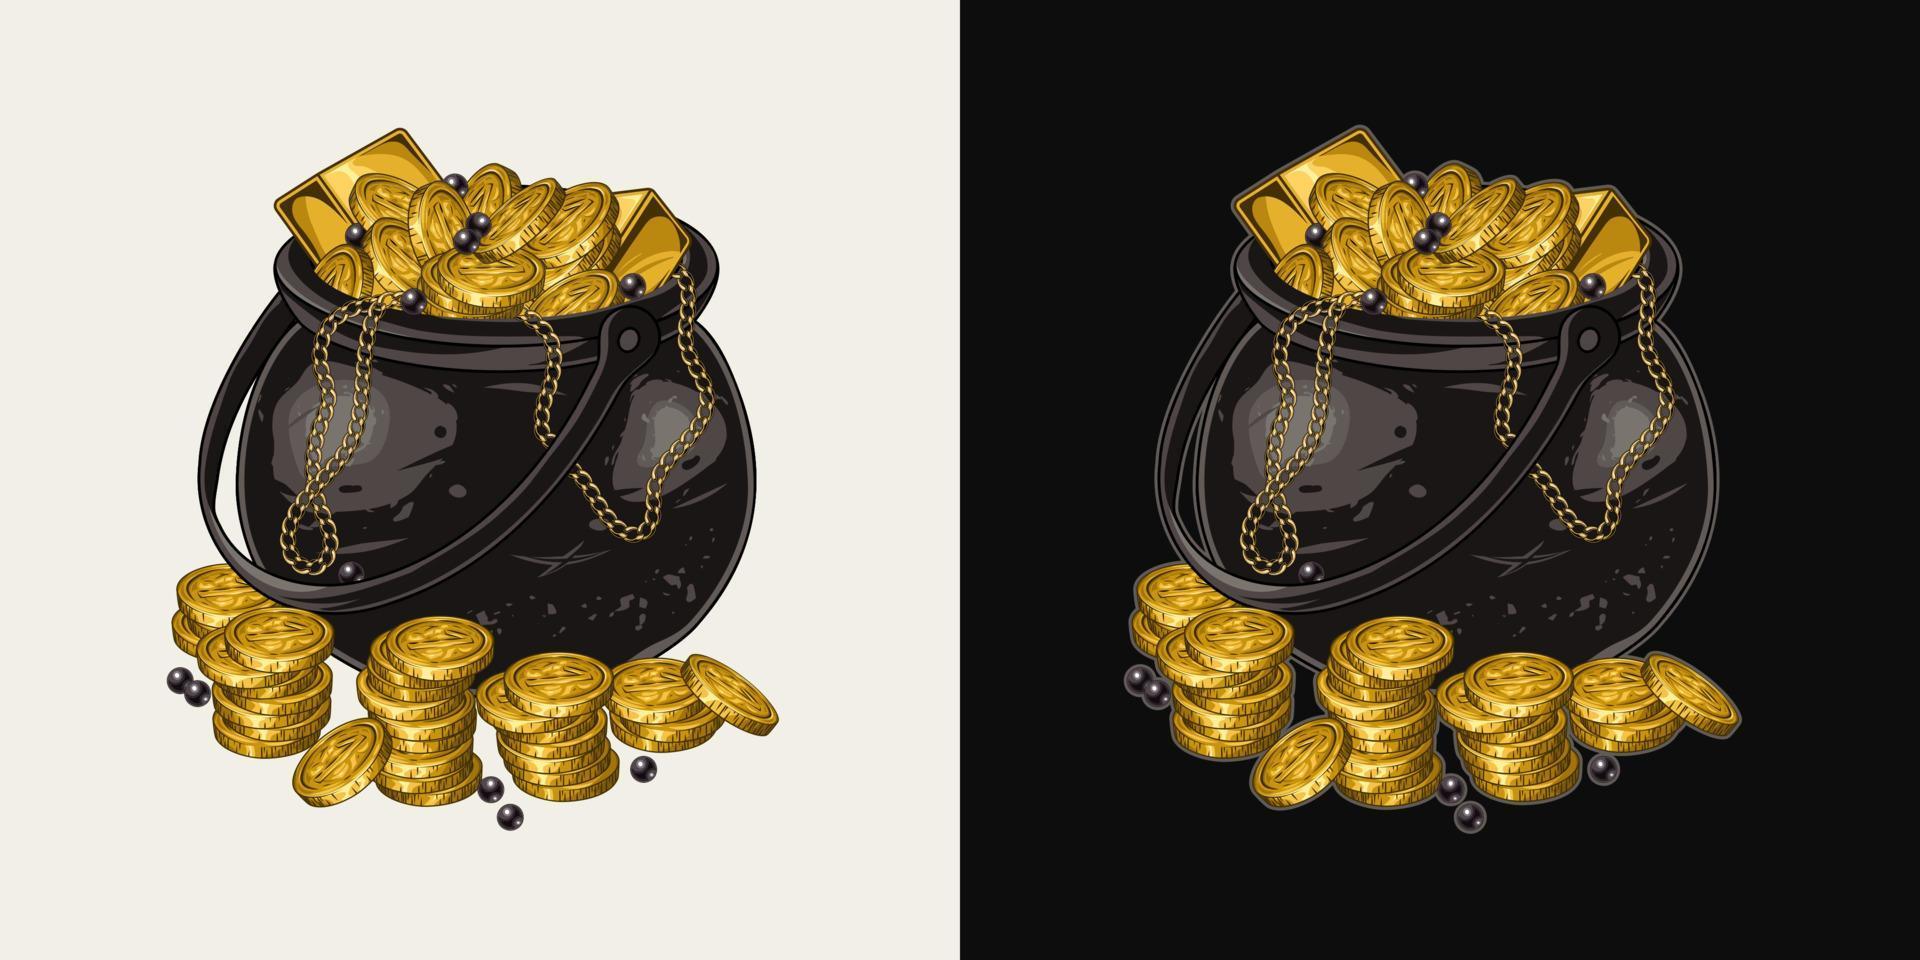 jeter le fer pot plein de or pièces de monnaie, lingots, noir perles, d'or Chaînes dans ancien style. détaillé vecteur illustration pour patricks jour, Trésor chasse, aventure.